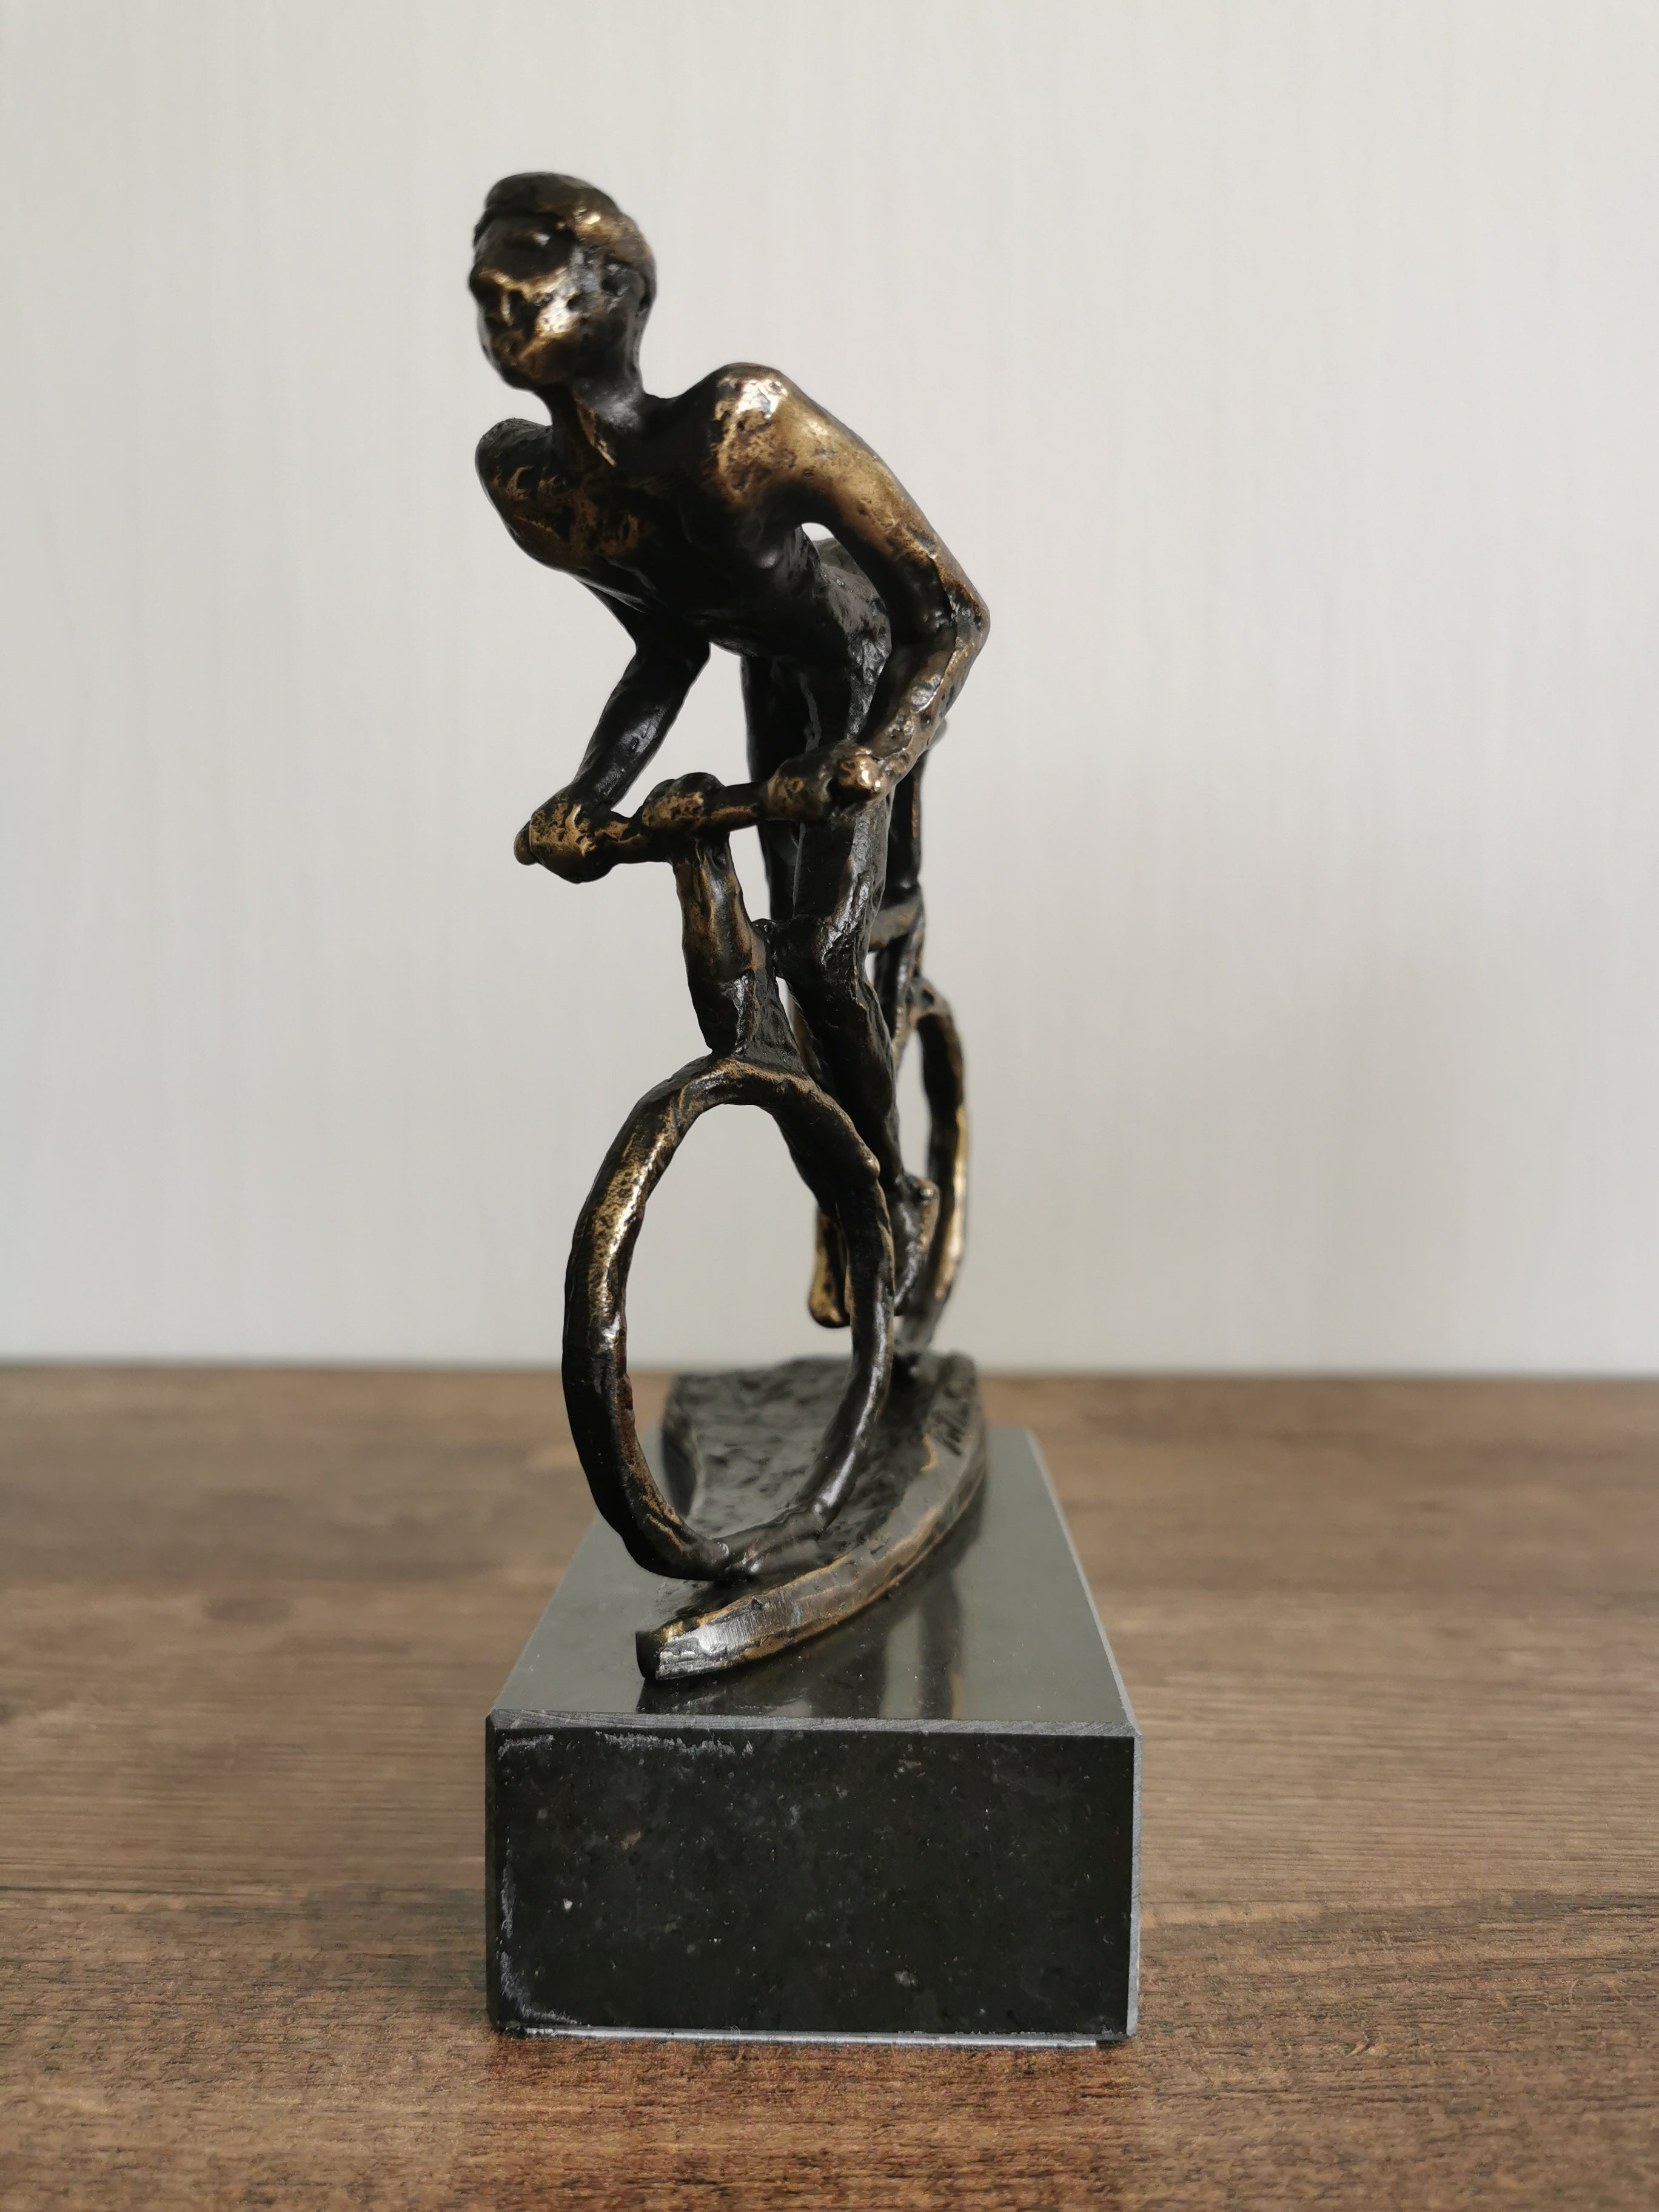 Ger van Tankeren - Biker | Sculptuur